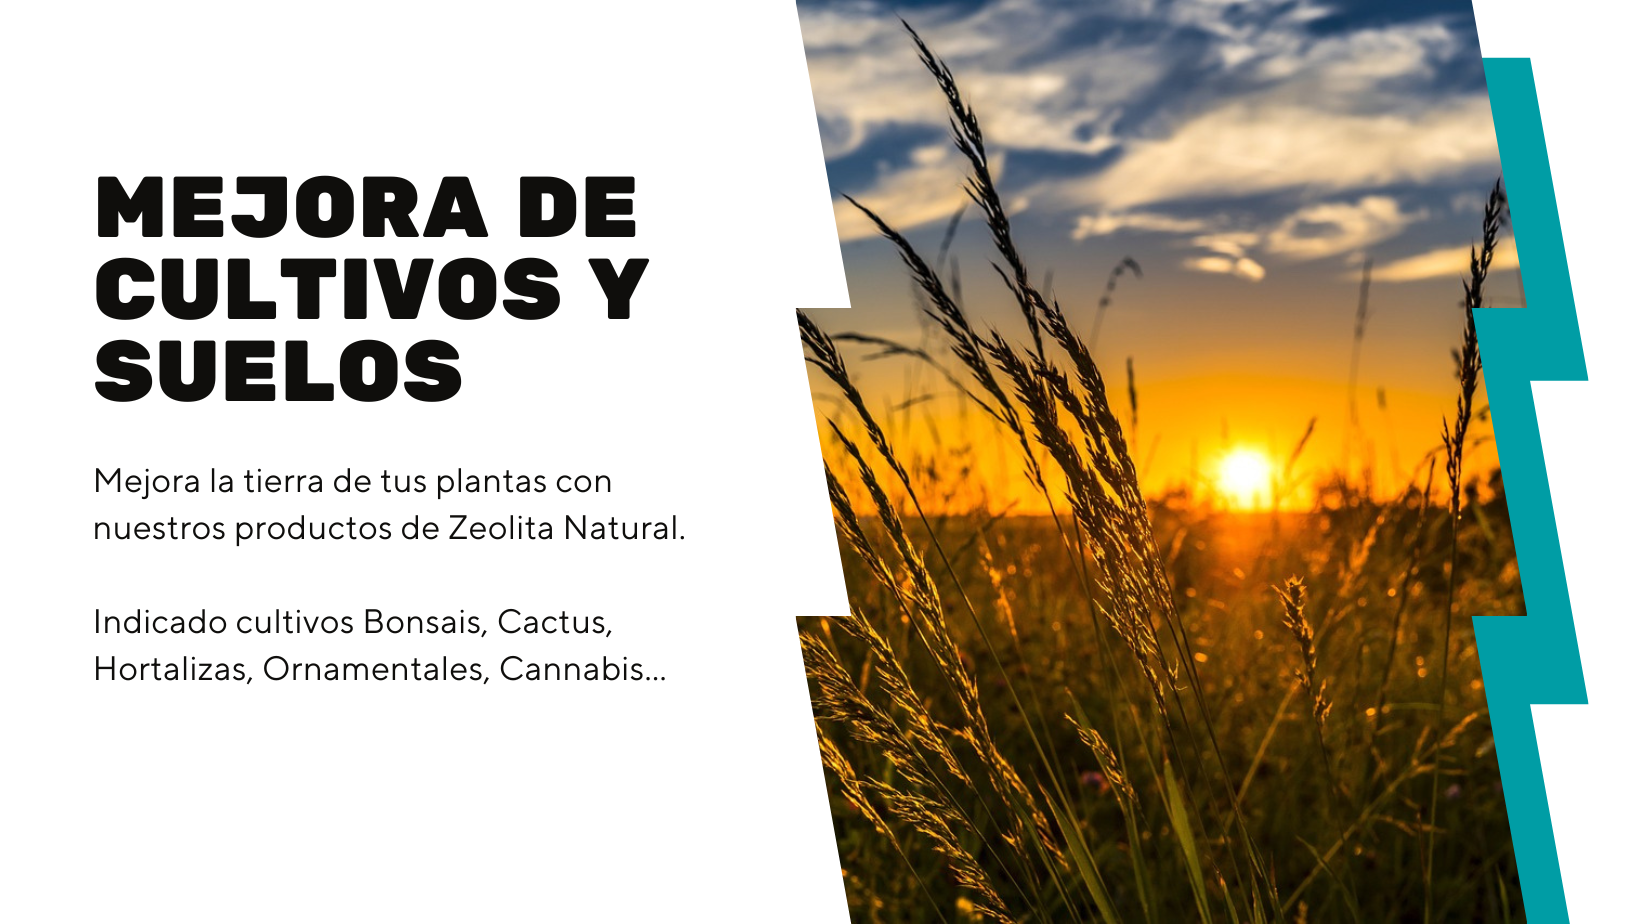 Comprar Zeolita Natural en Polvo en Canarias, Los mejores precios